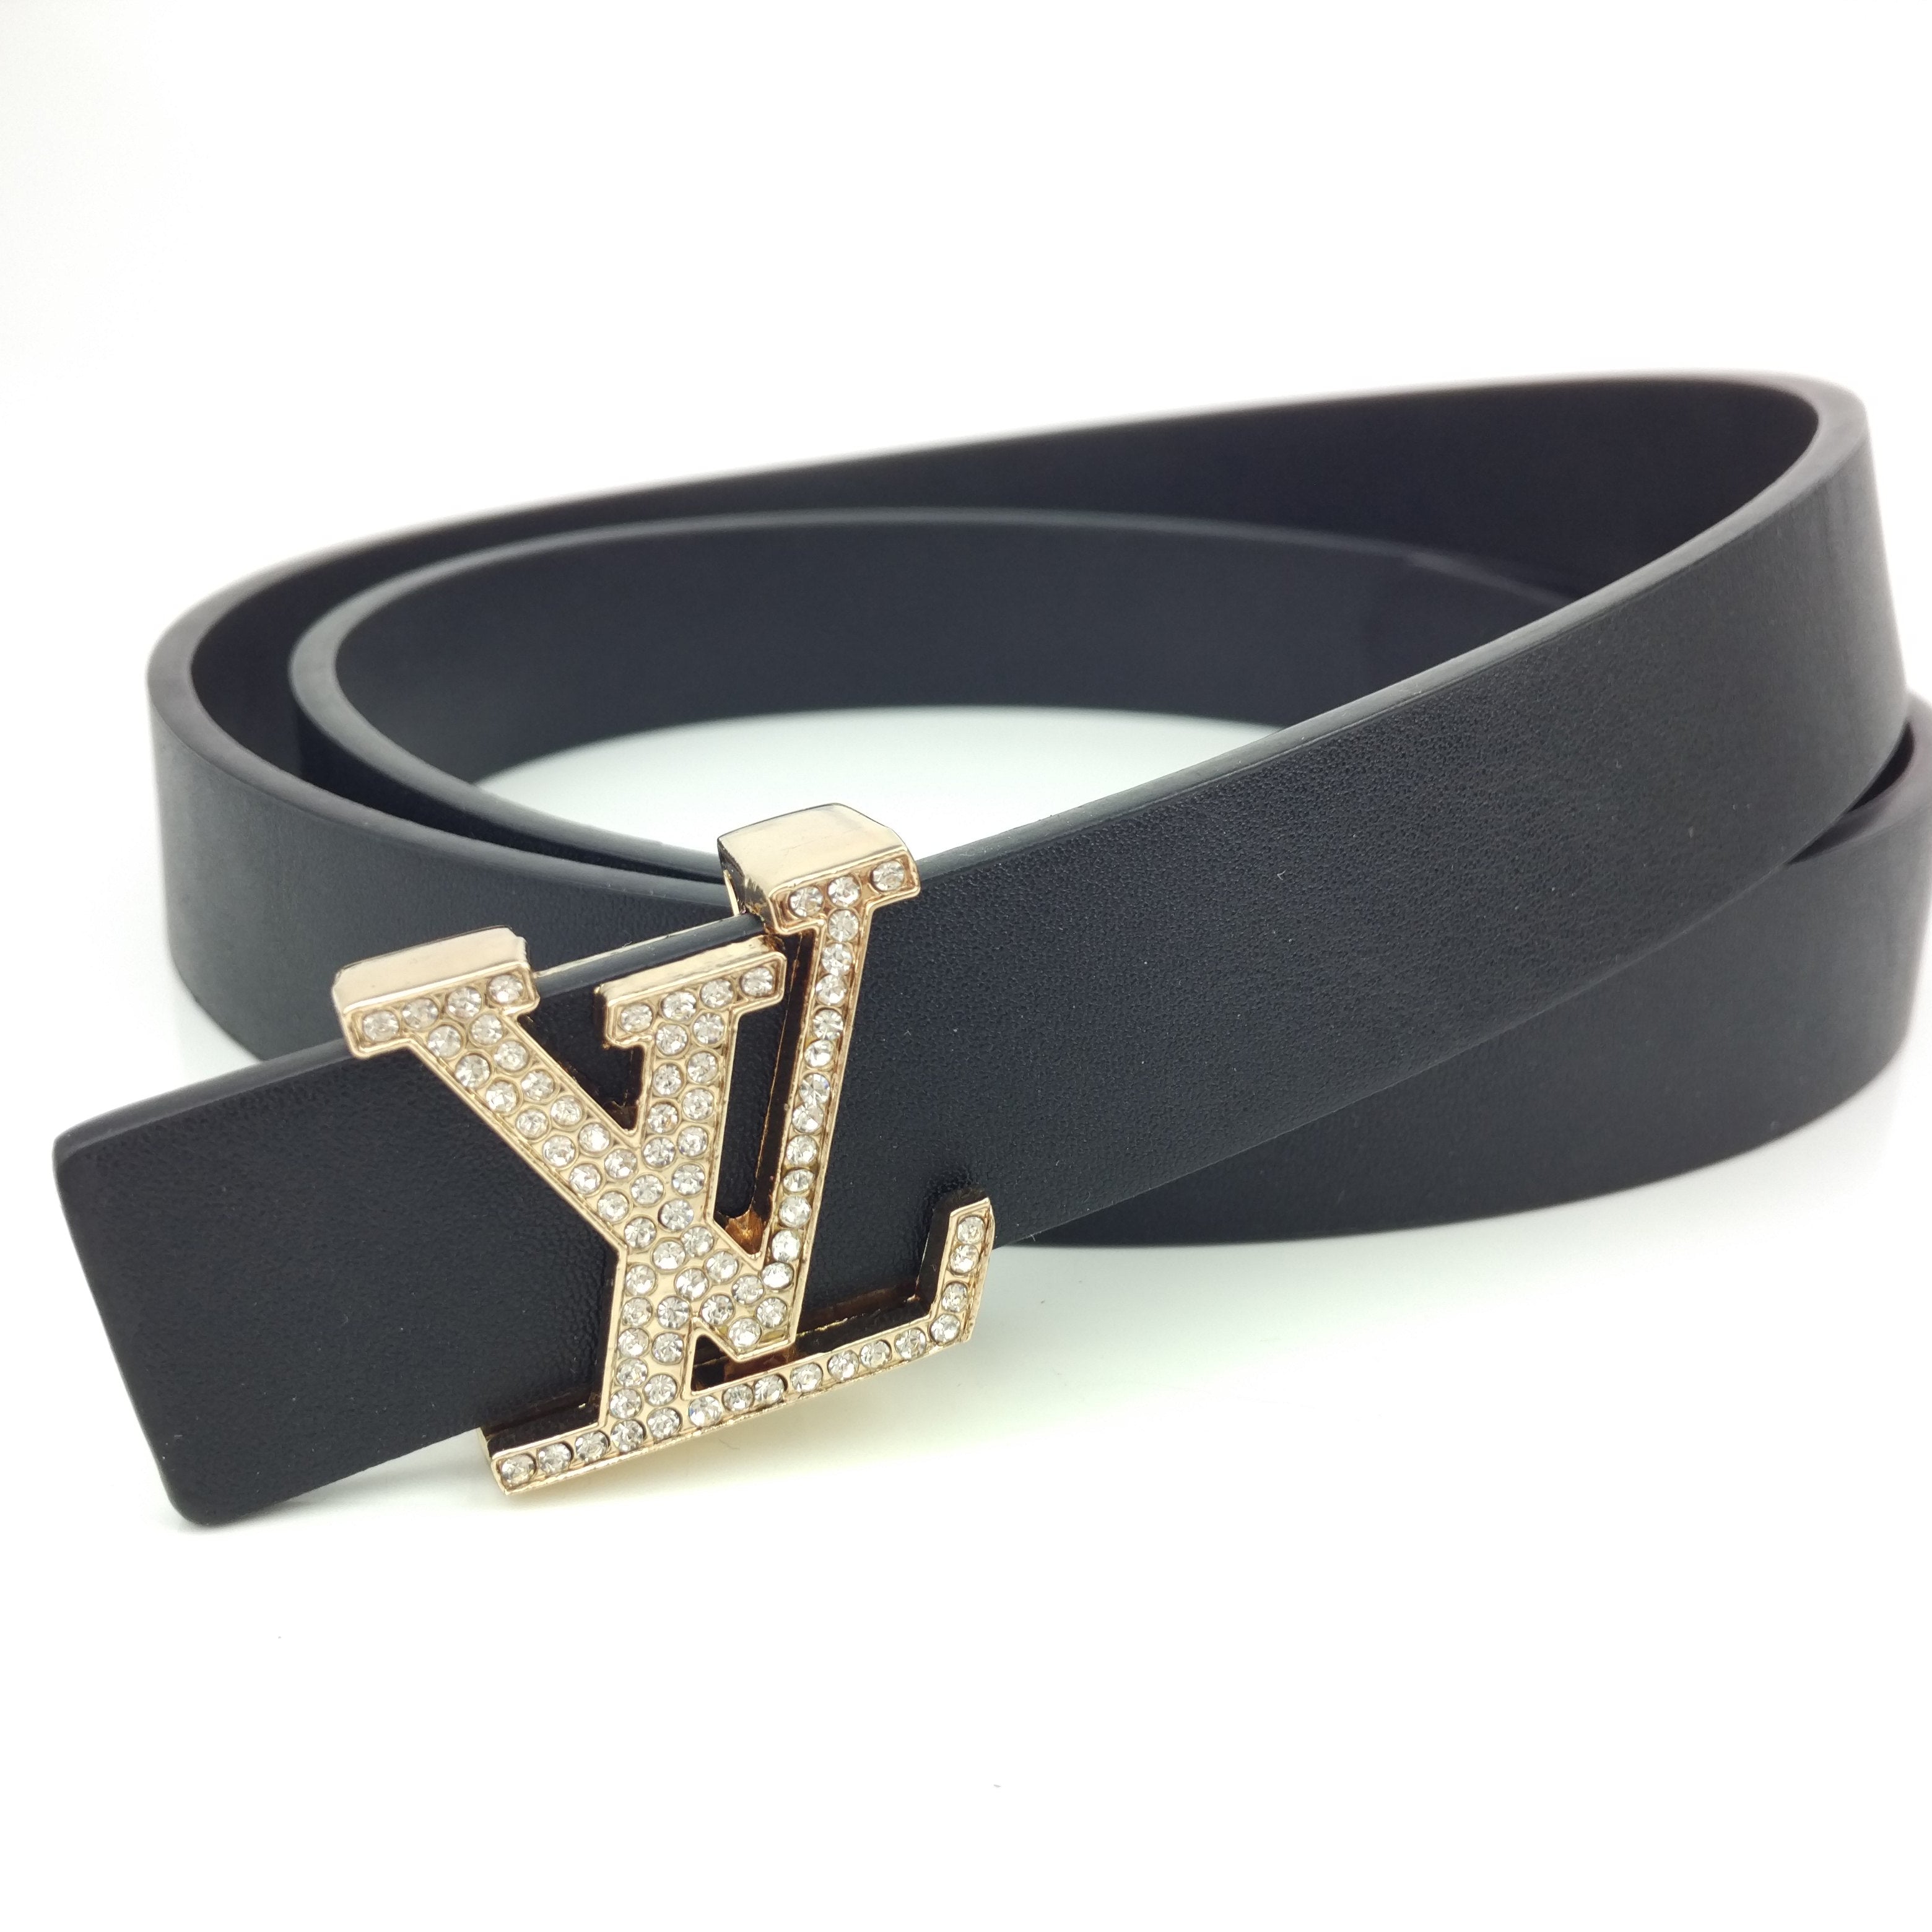 LV Louis Vuitton men's and women's fashion inlaid diamon